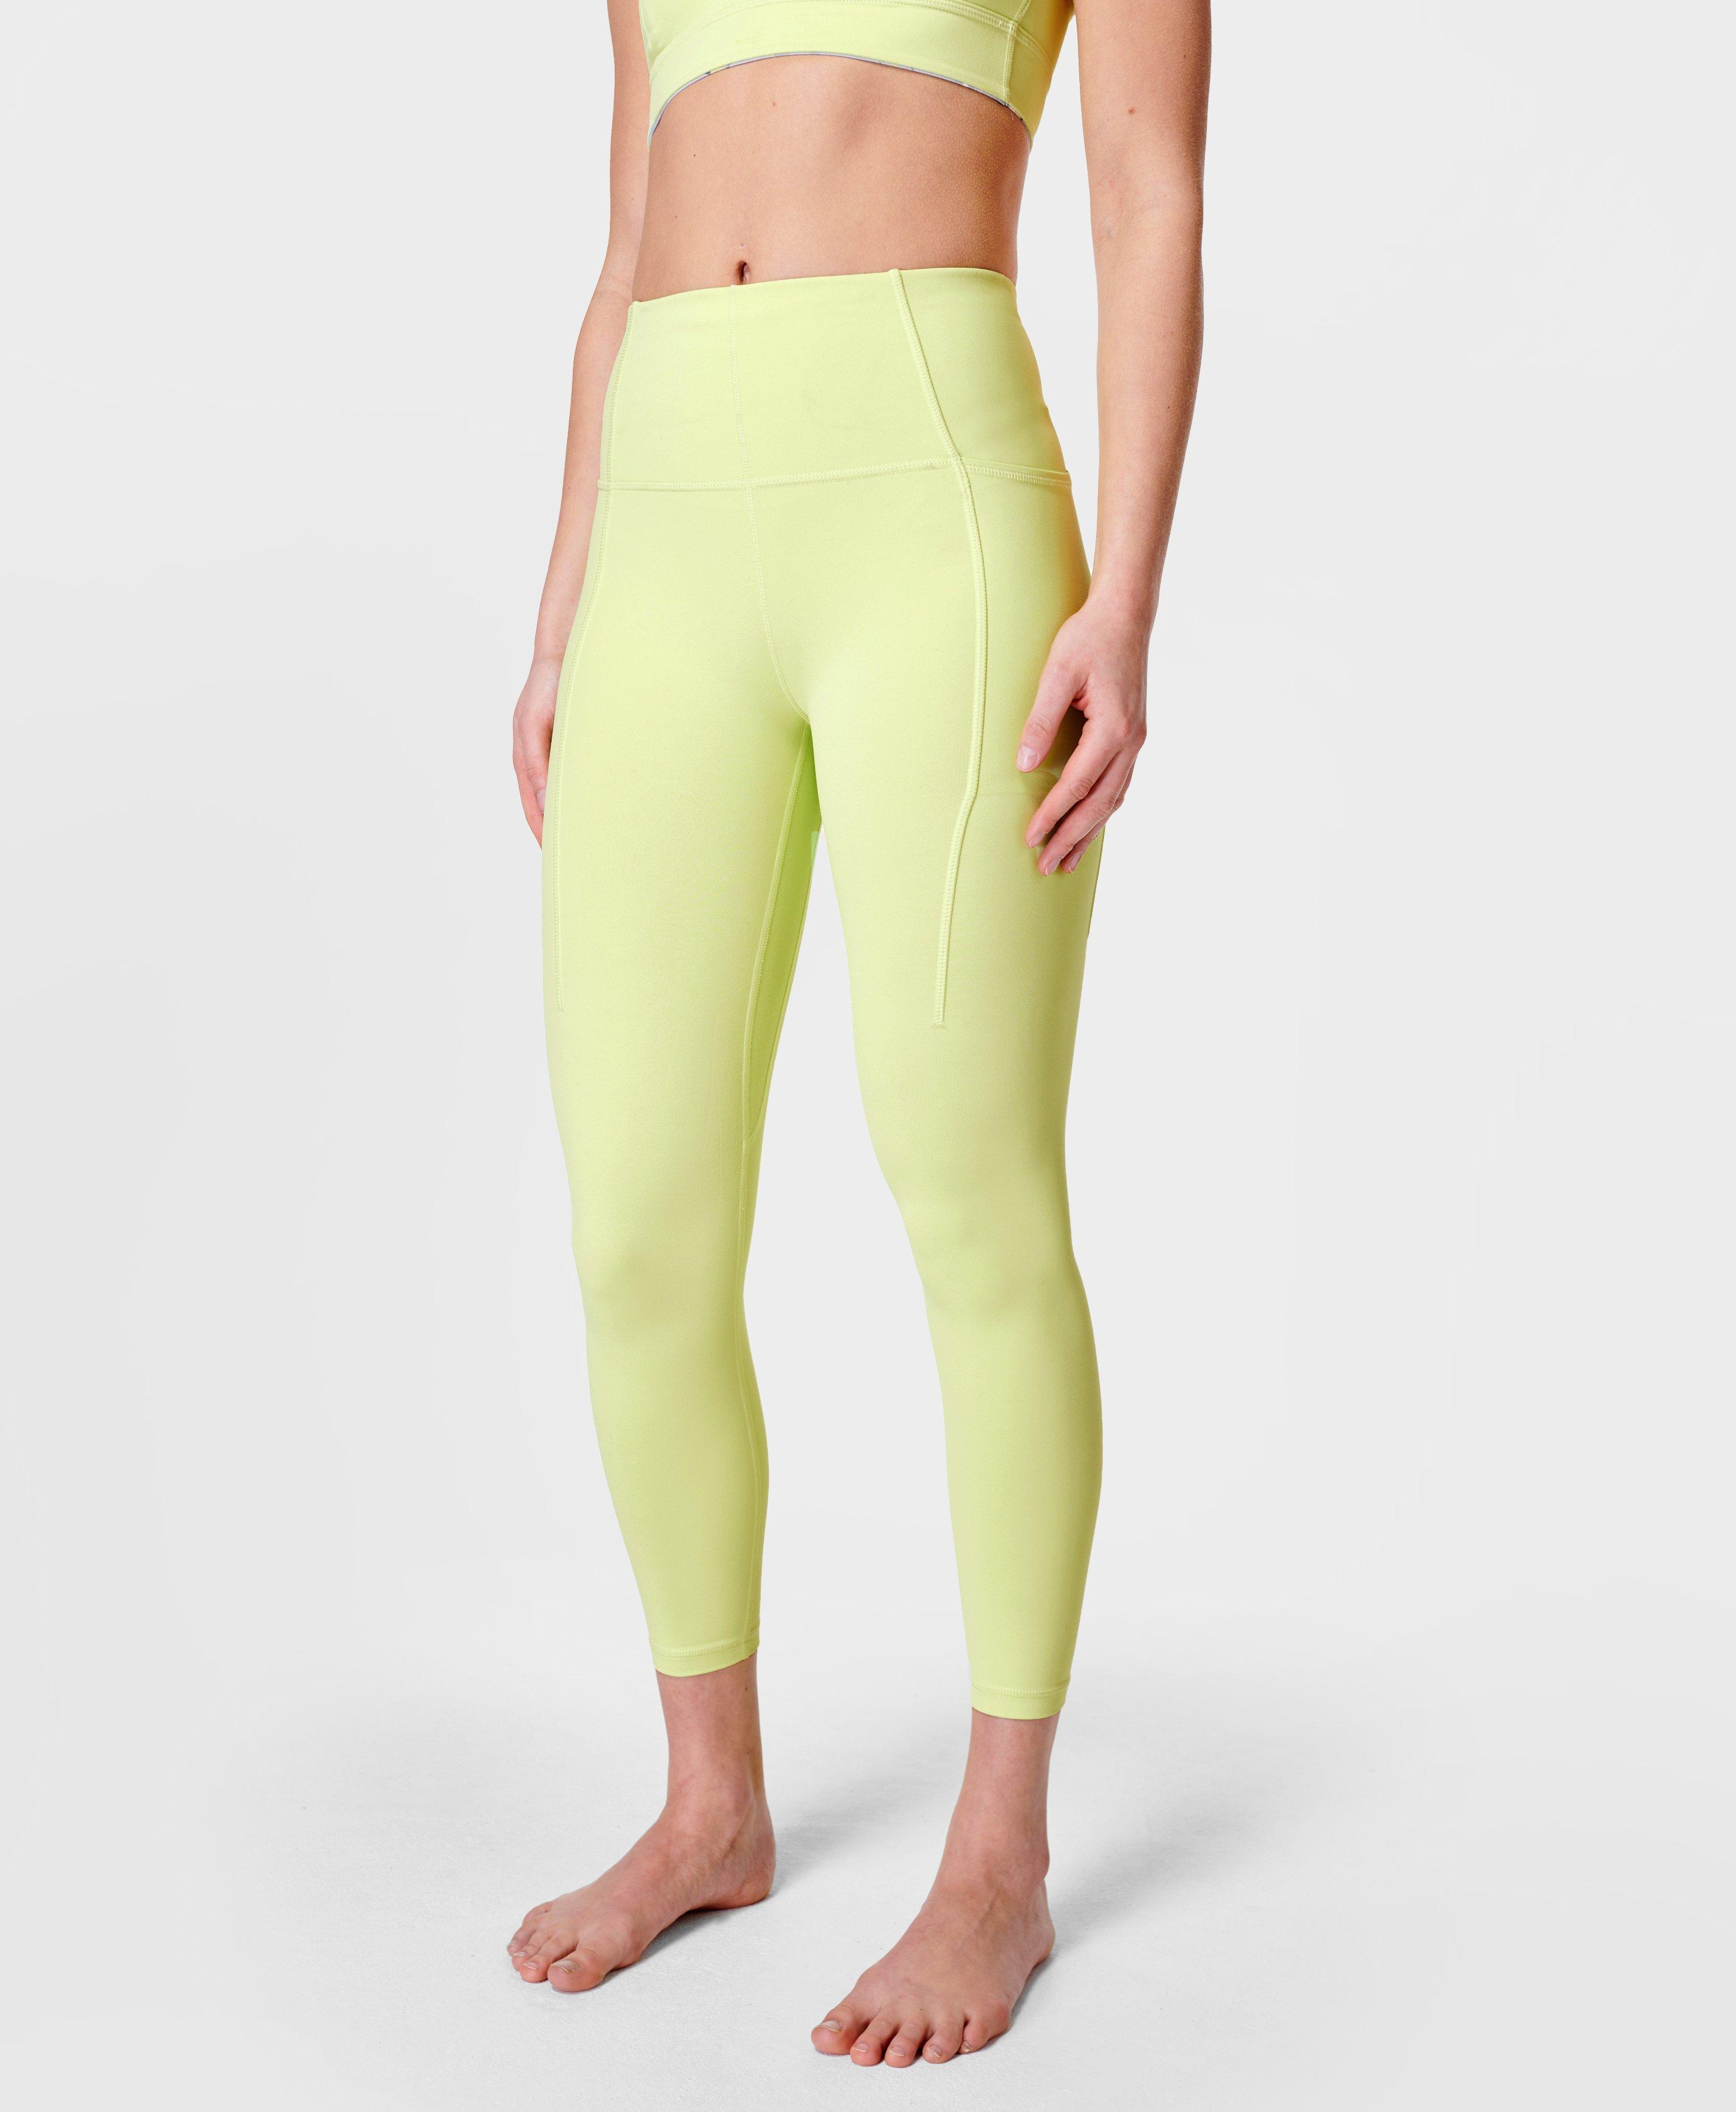 Super Soft 7/8 Yoga Leggings - Pomelo Green